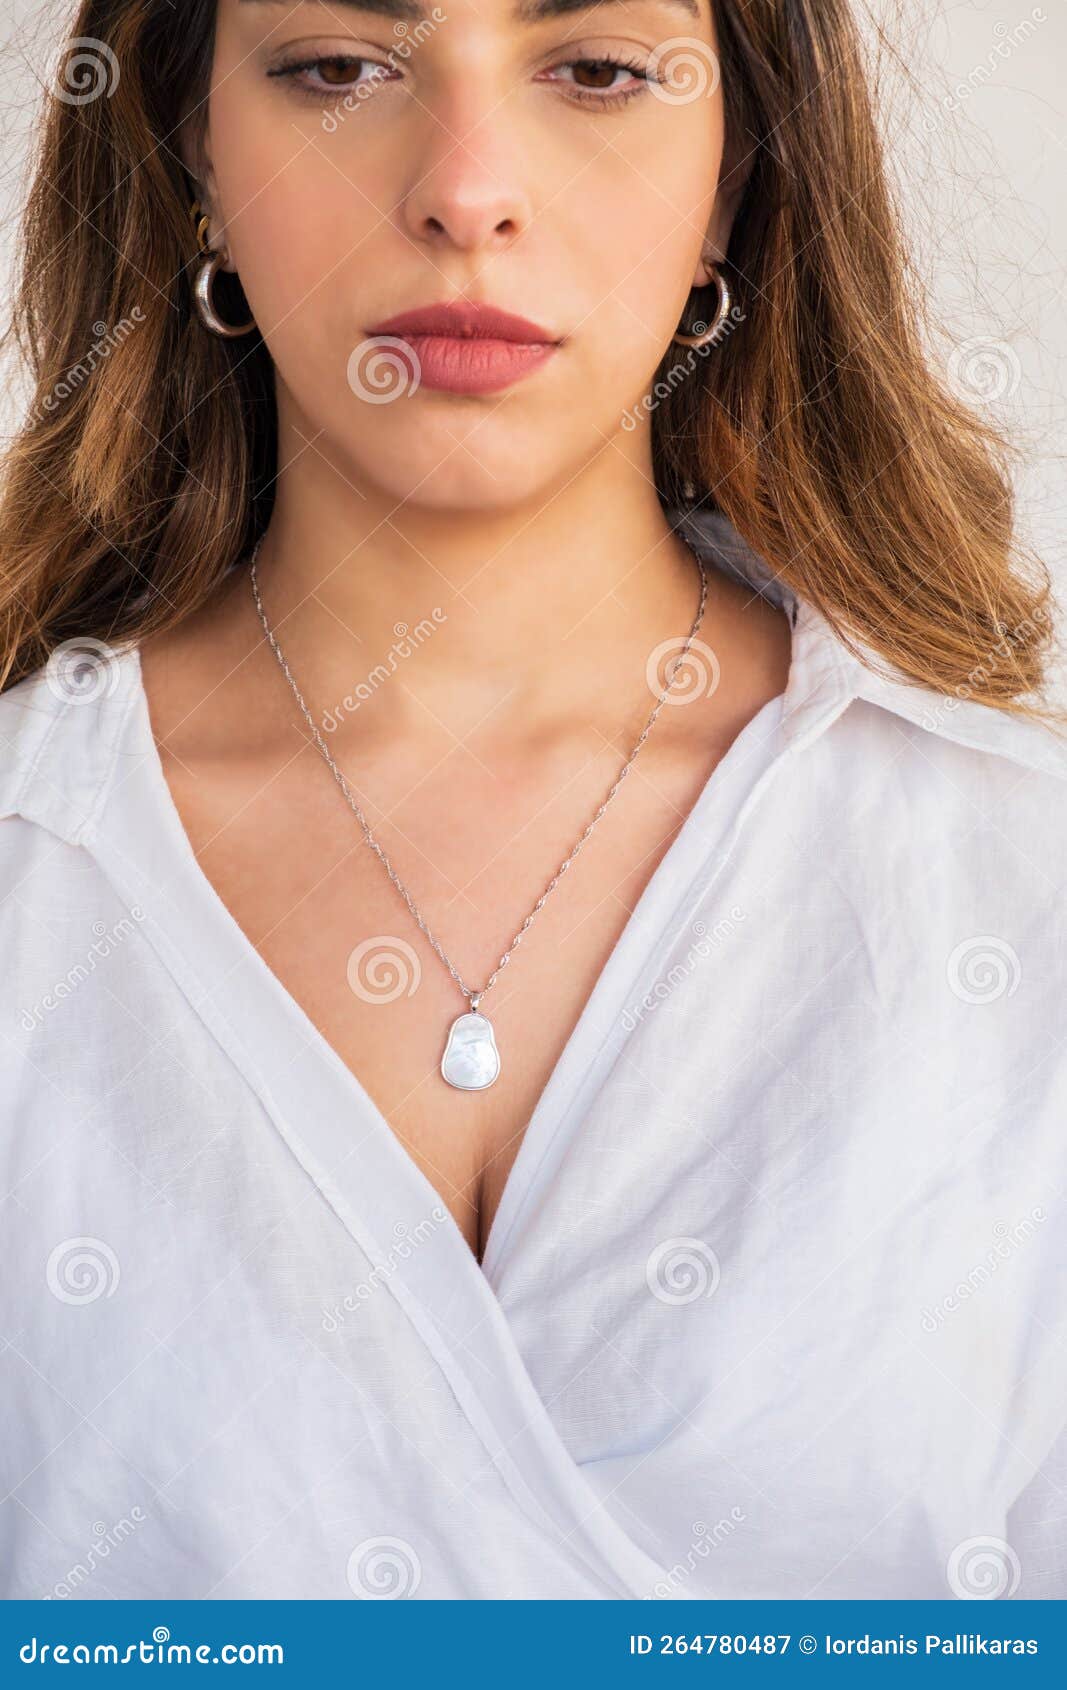 impacto Comparación Lejos Joven Mujer Con Collar De Perlas De Cadena De Plata Y Pendientes De Plata  Imagen de archivo - Imagen de morena, hembra: 264780487